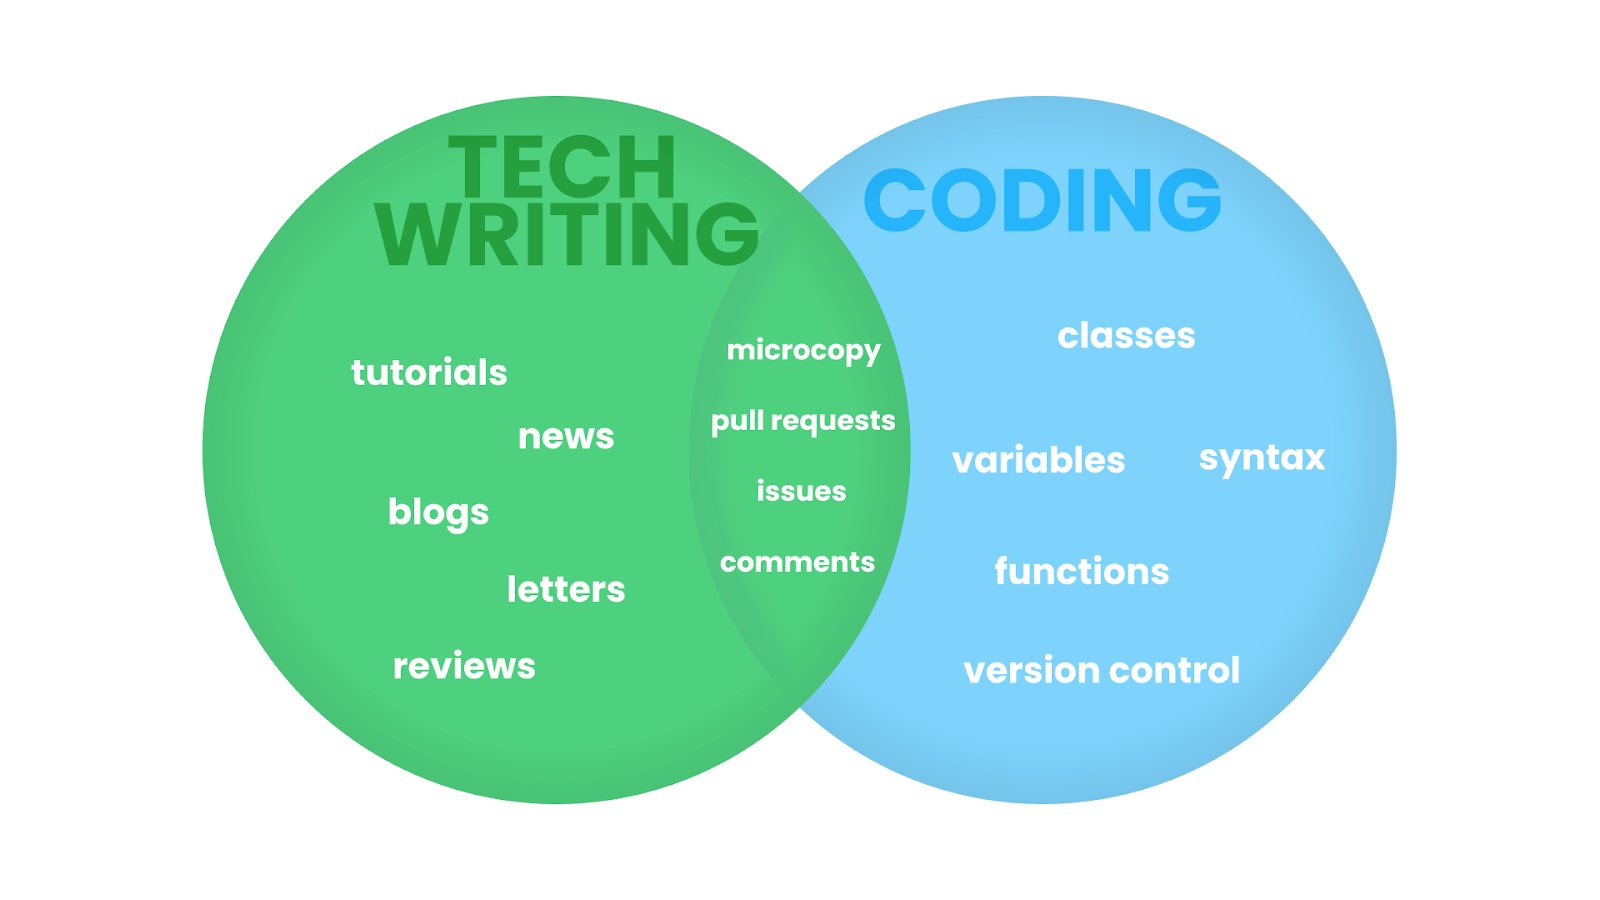 Diagramme de Venn montrant le chevauchement entre la rédaction technique et le codage.